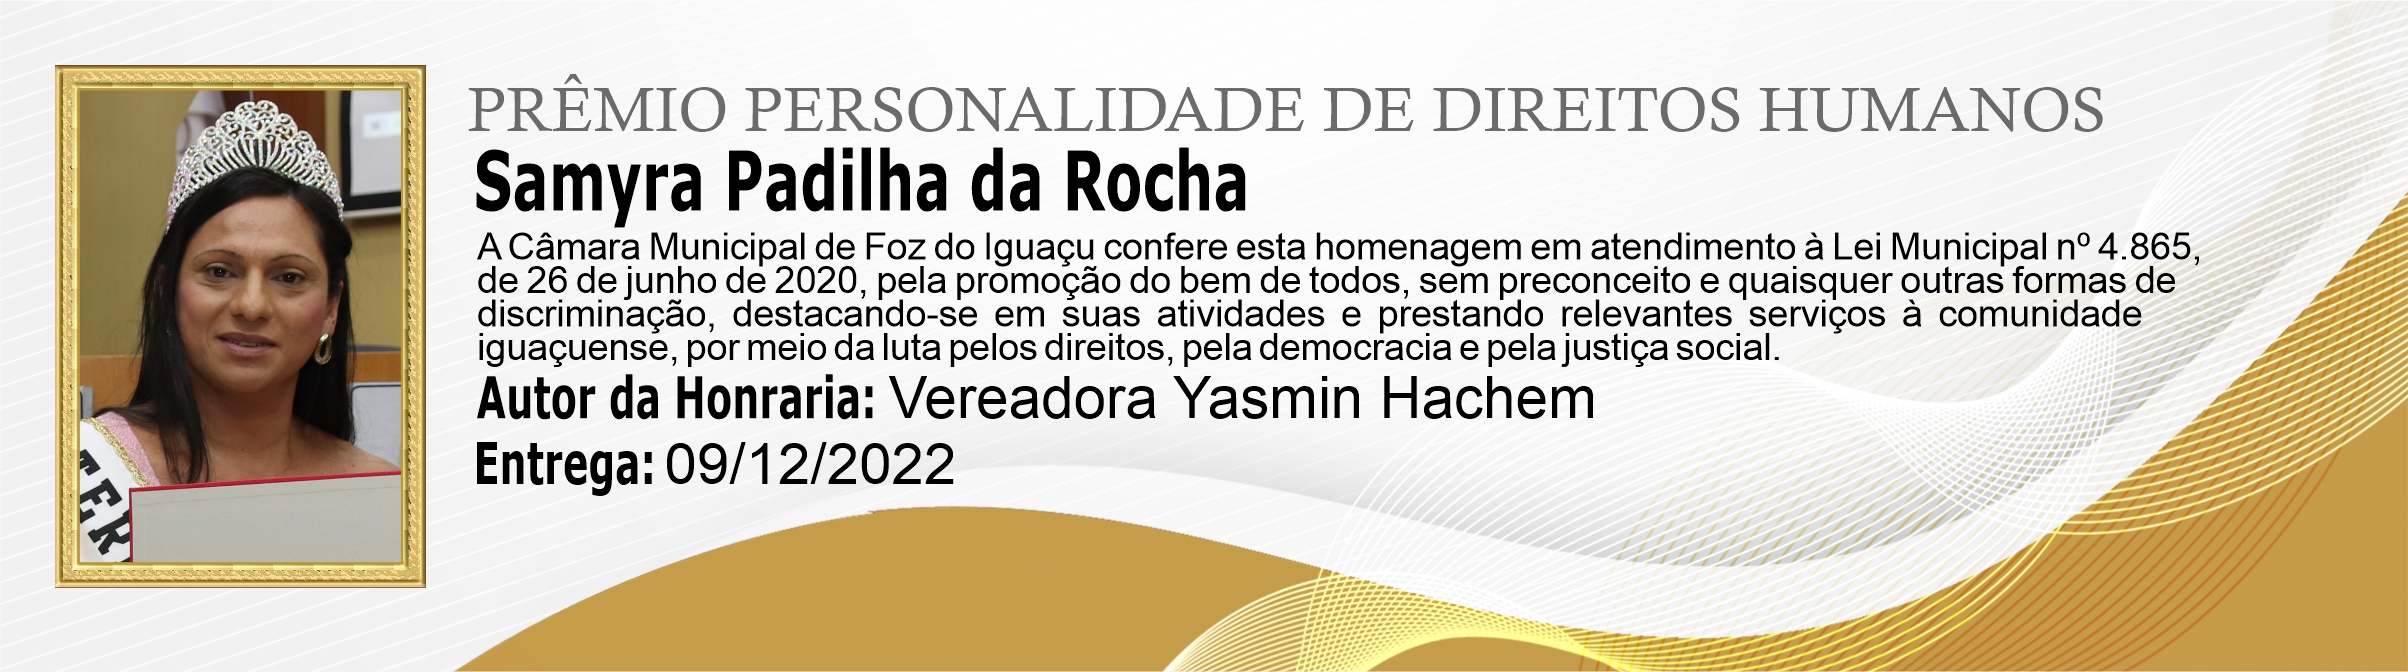 Samyra Padilha da Rocha